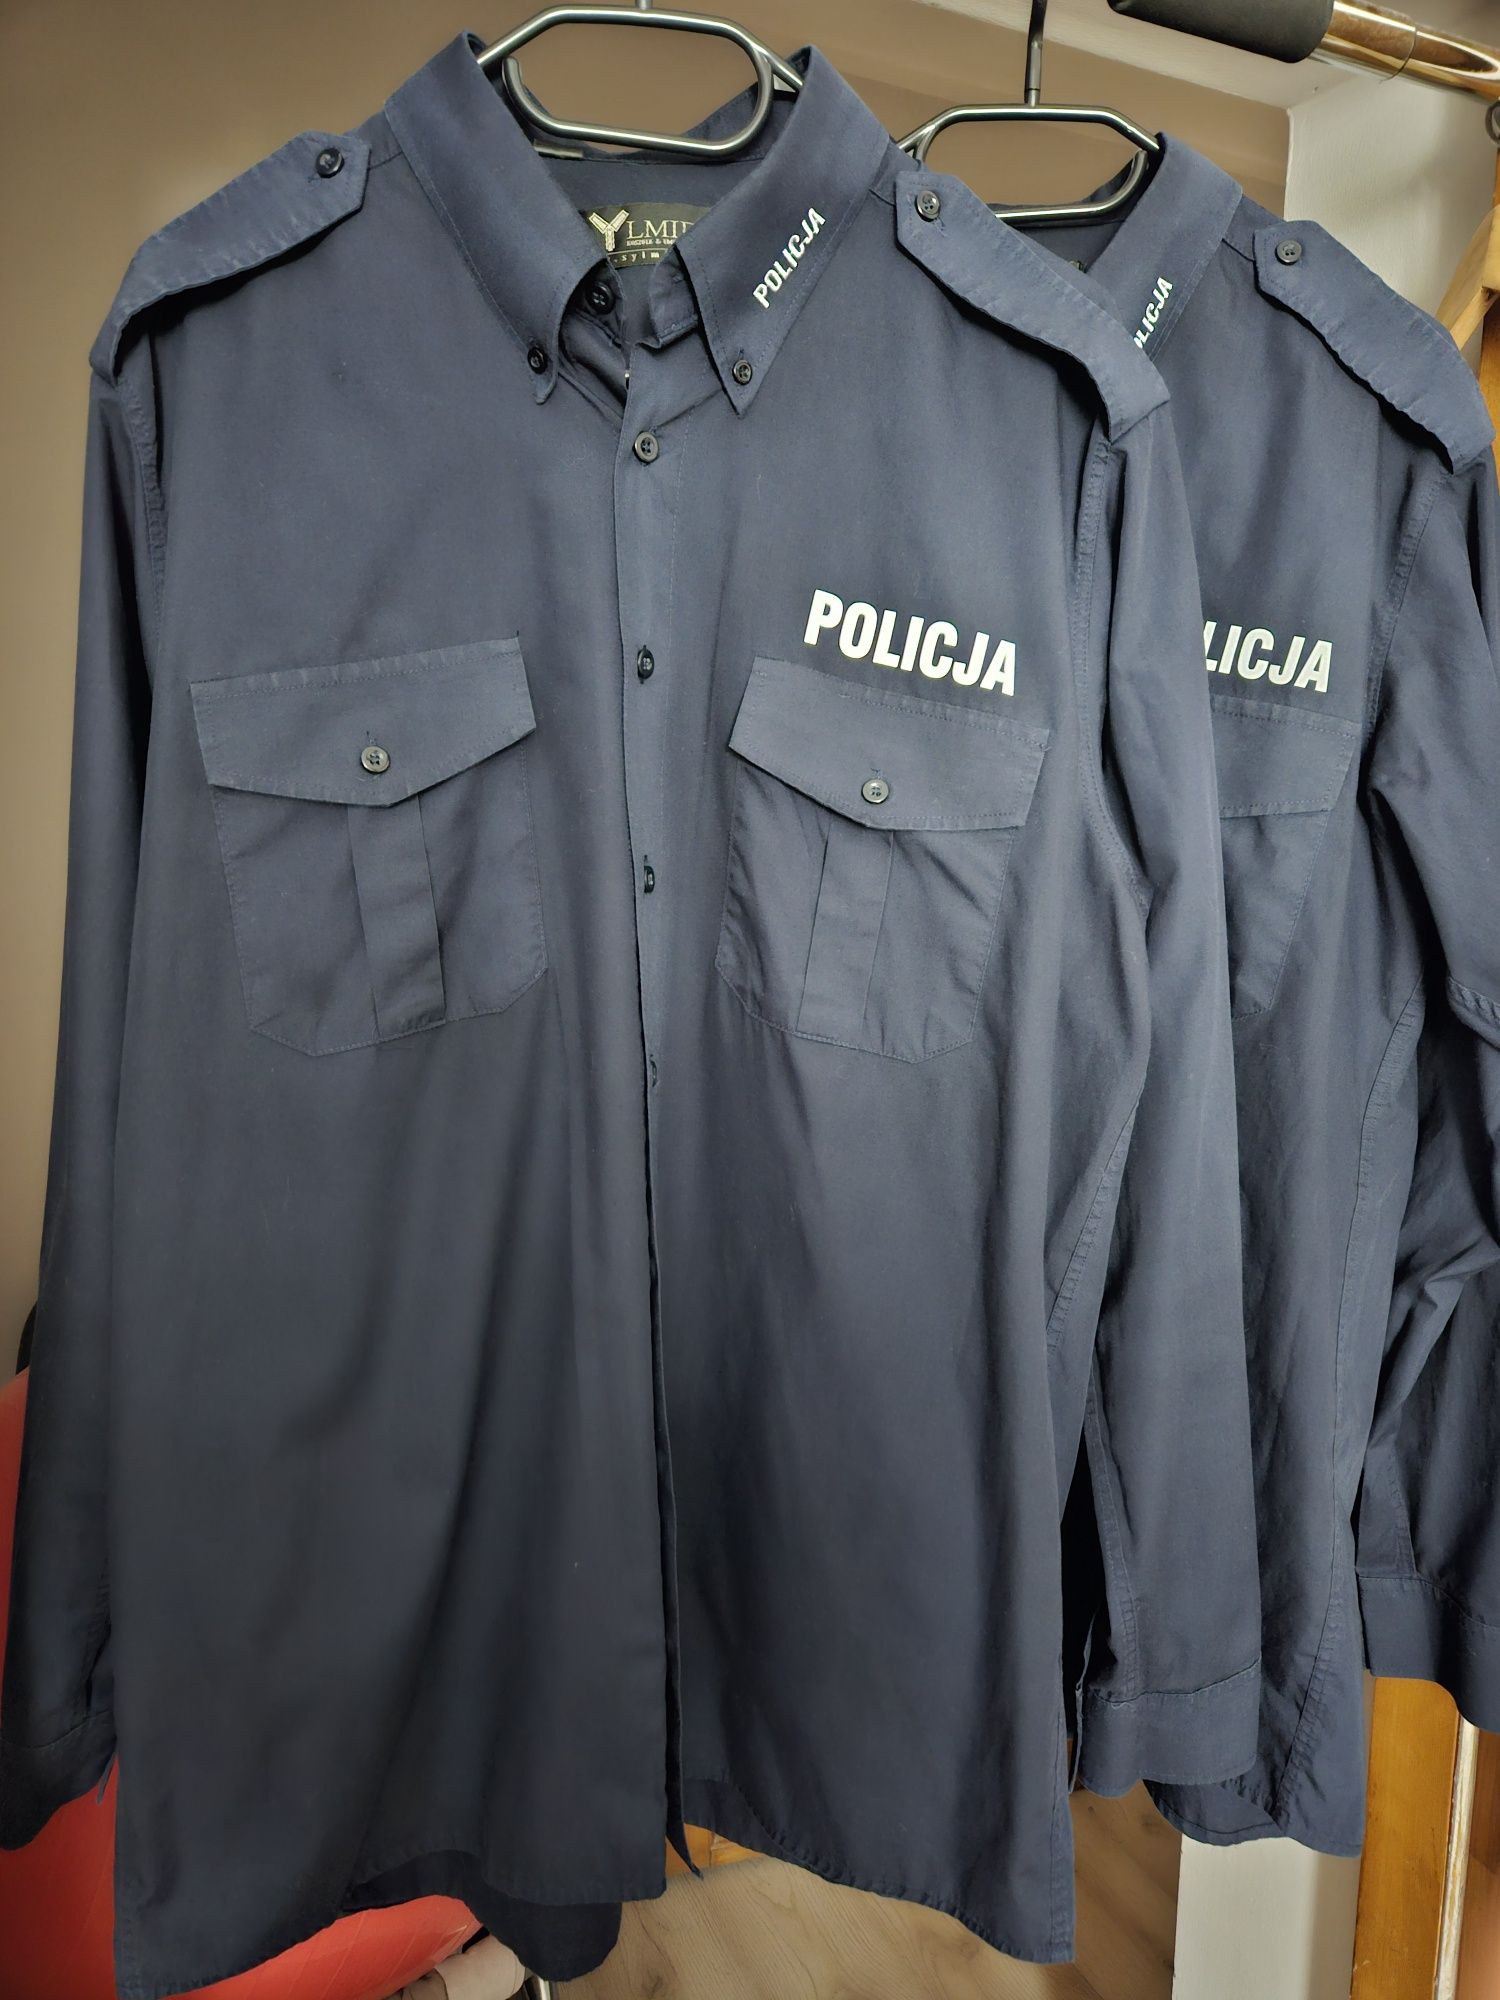 Policja. Koszula służbowa 4 szt. krótki i długi komplet roz. XL